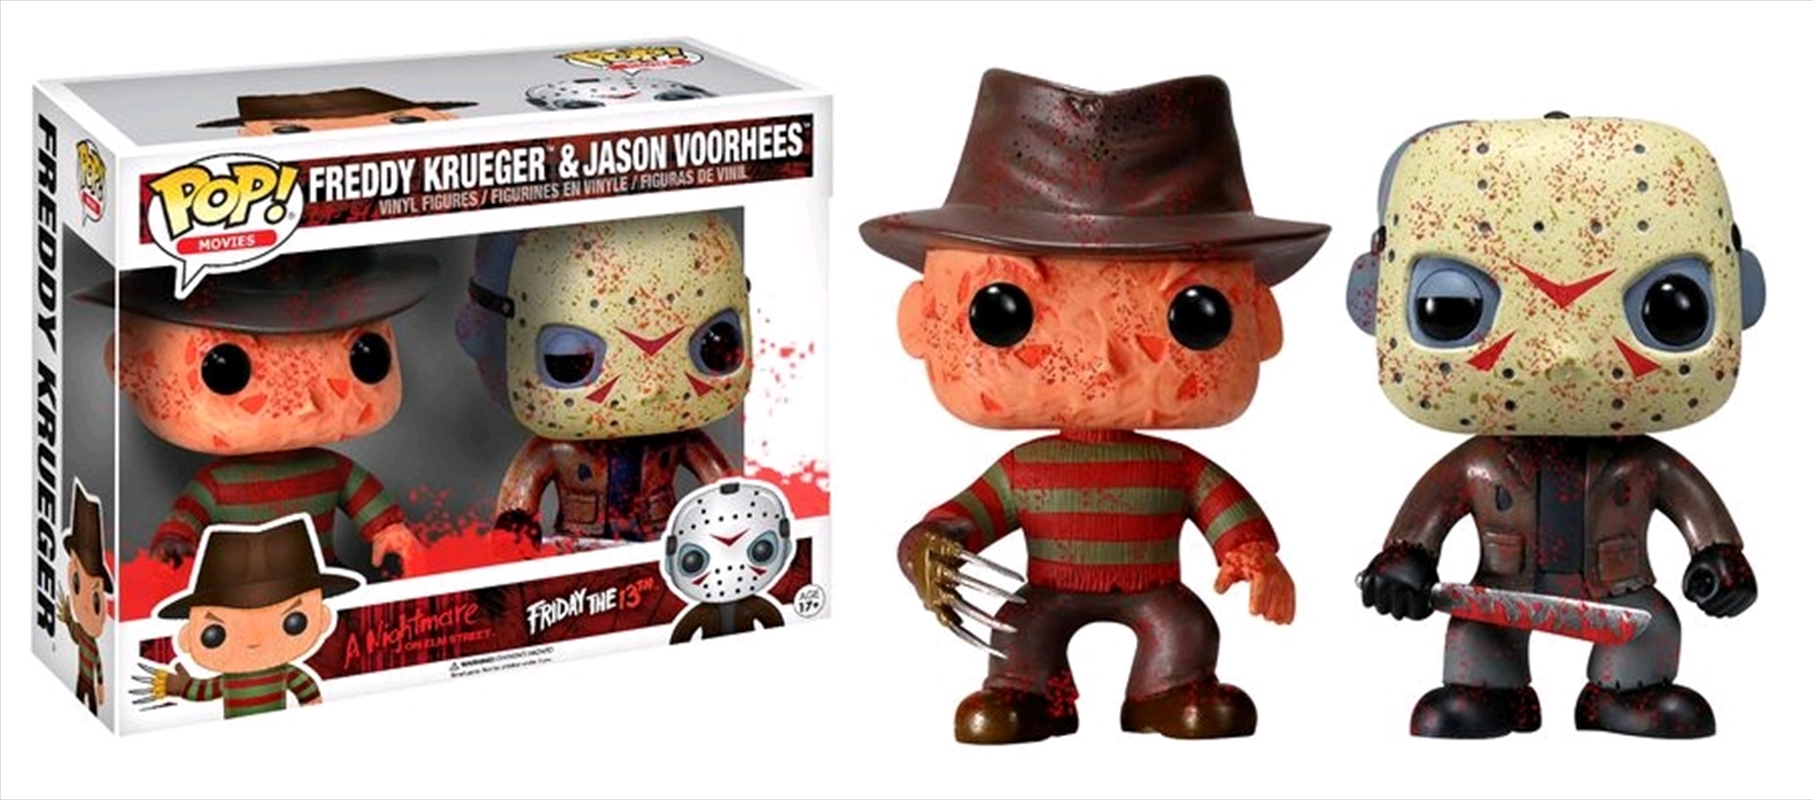 Freddy vs Jason - Freddy Krueger & Jason Voorhees Bloody US Exclusive Pop! Vinyl 2-Pack/Product Detail/Movies